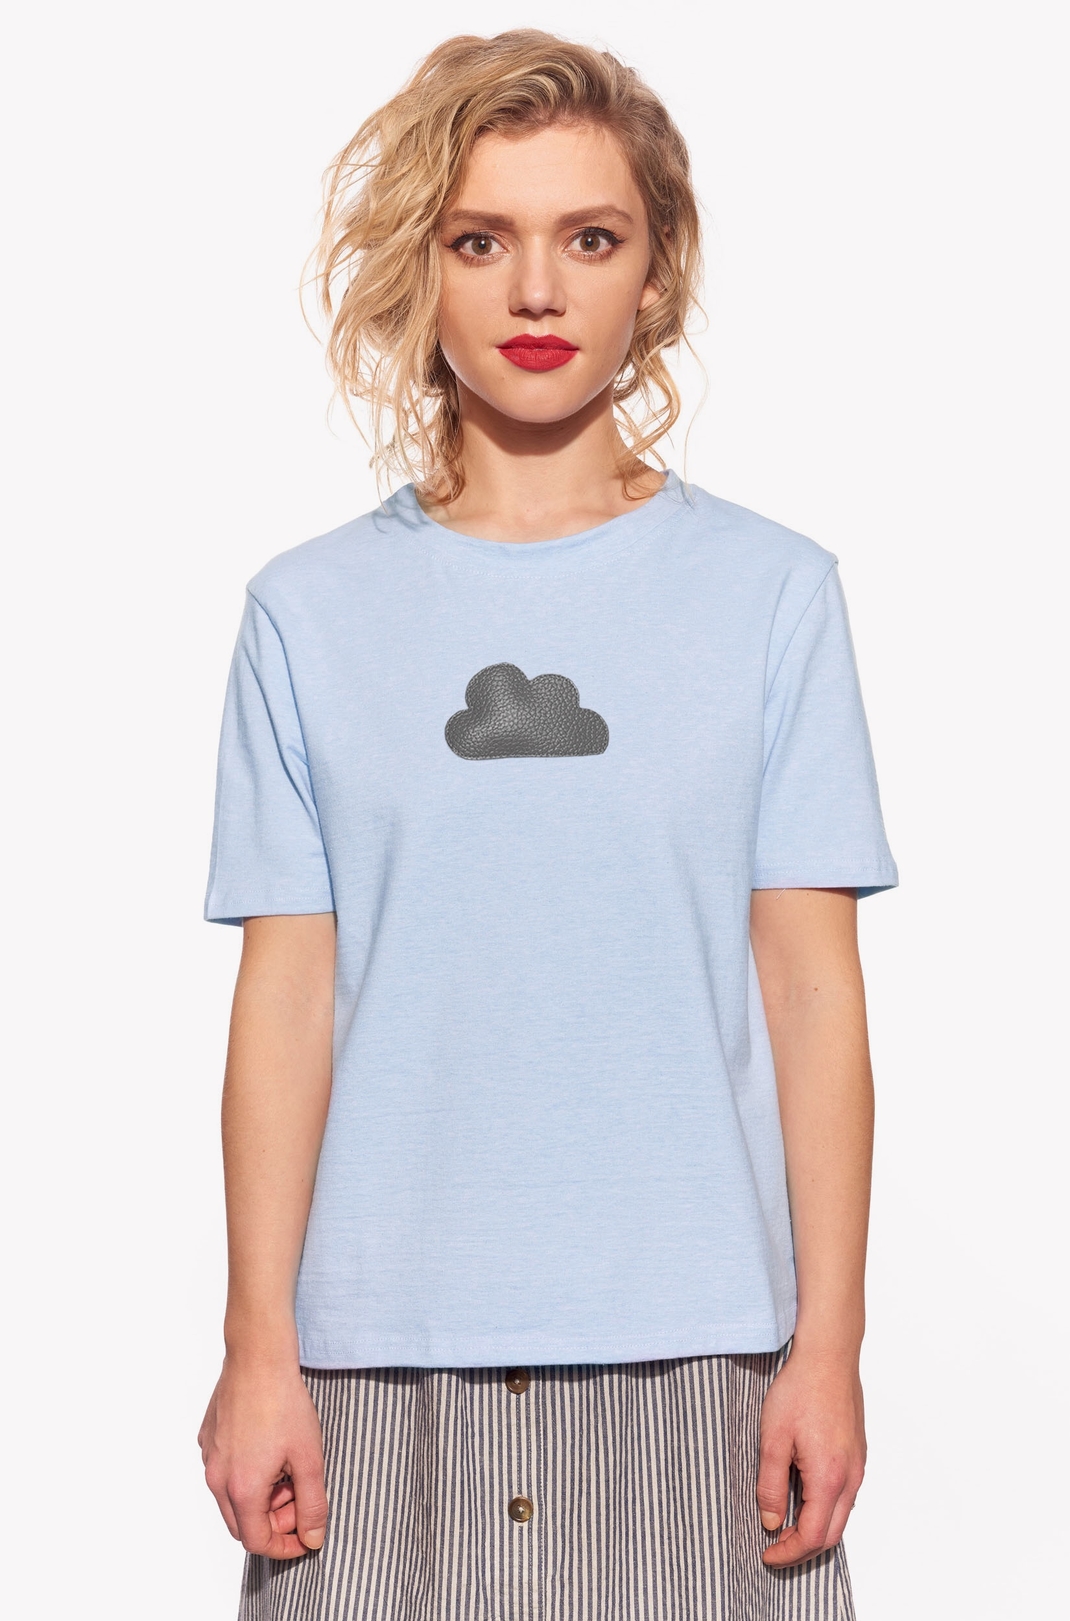 Pólók felhővel